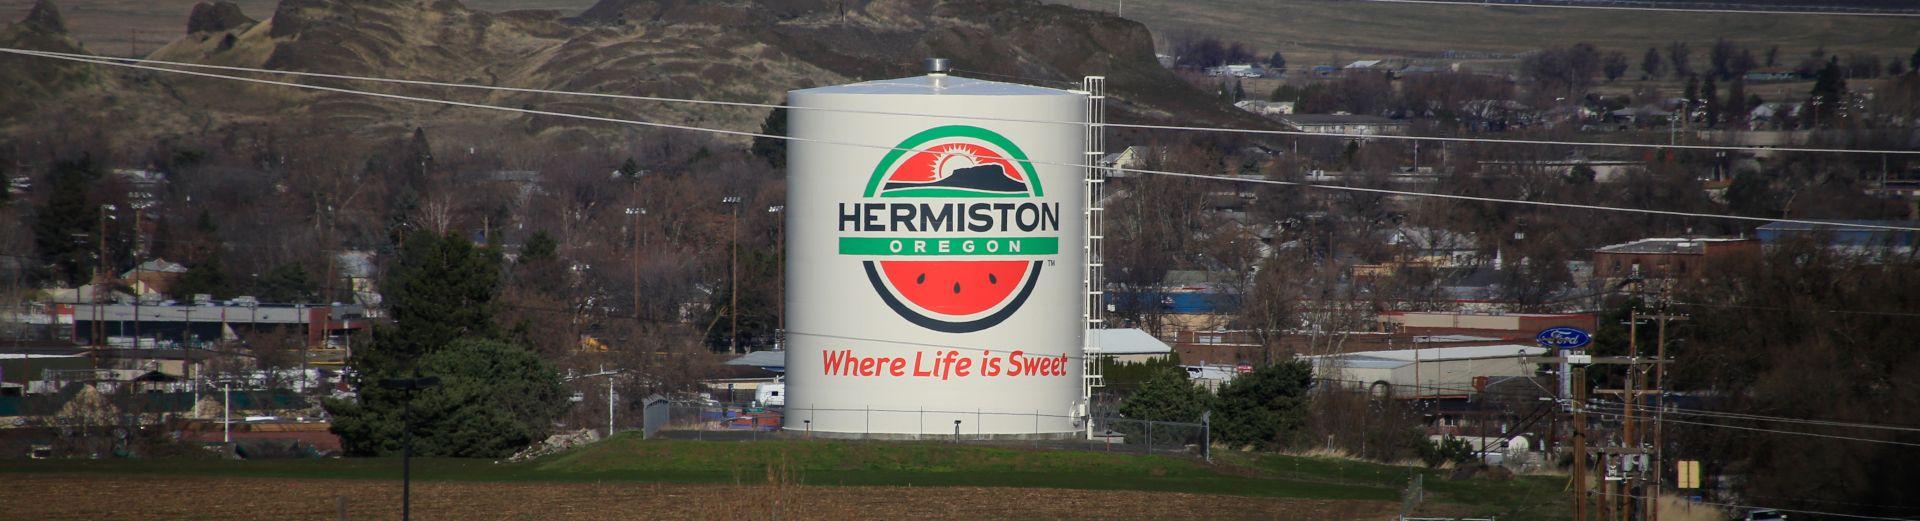 Hermiston Logo - Hermiston, Oregon - Where life is sweet | Business View Magazine